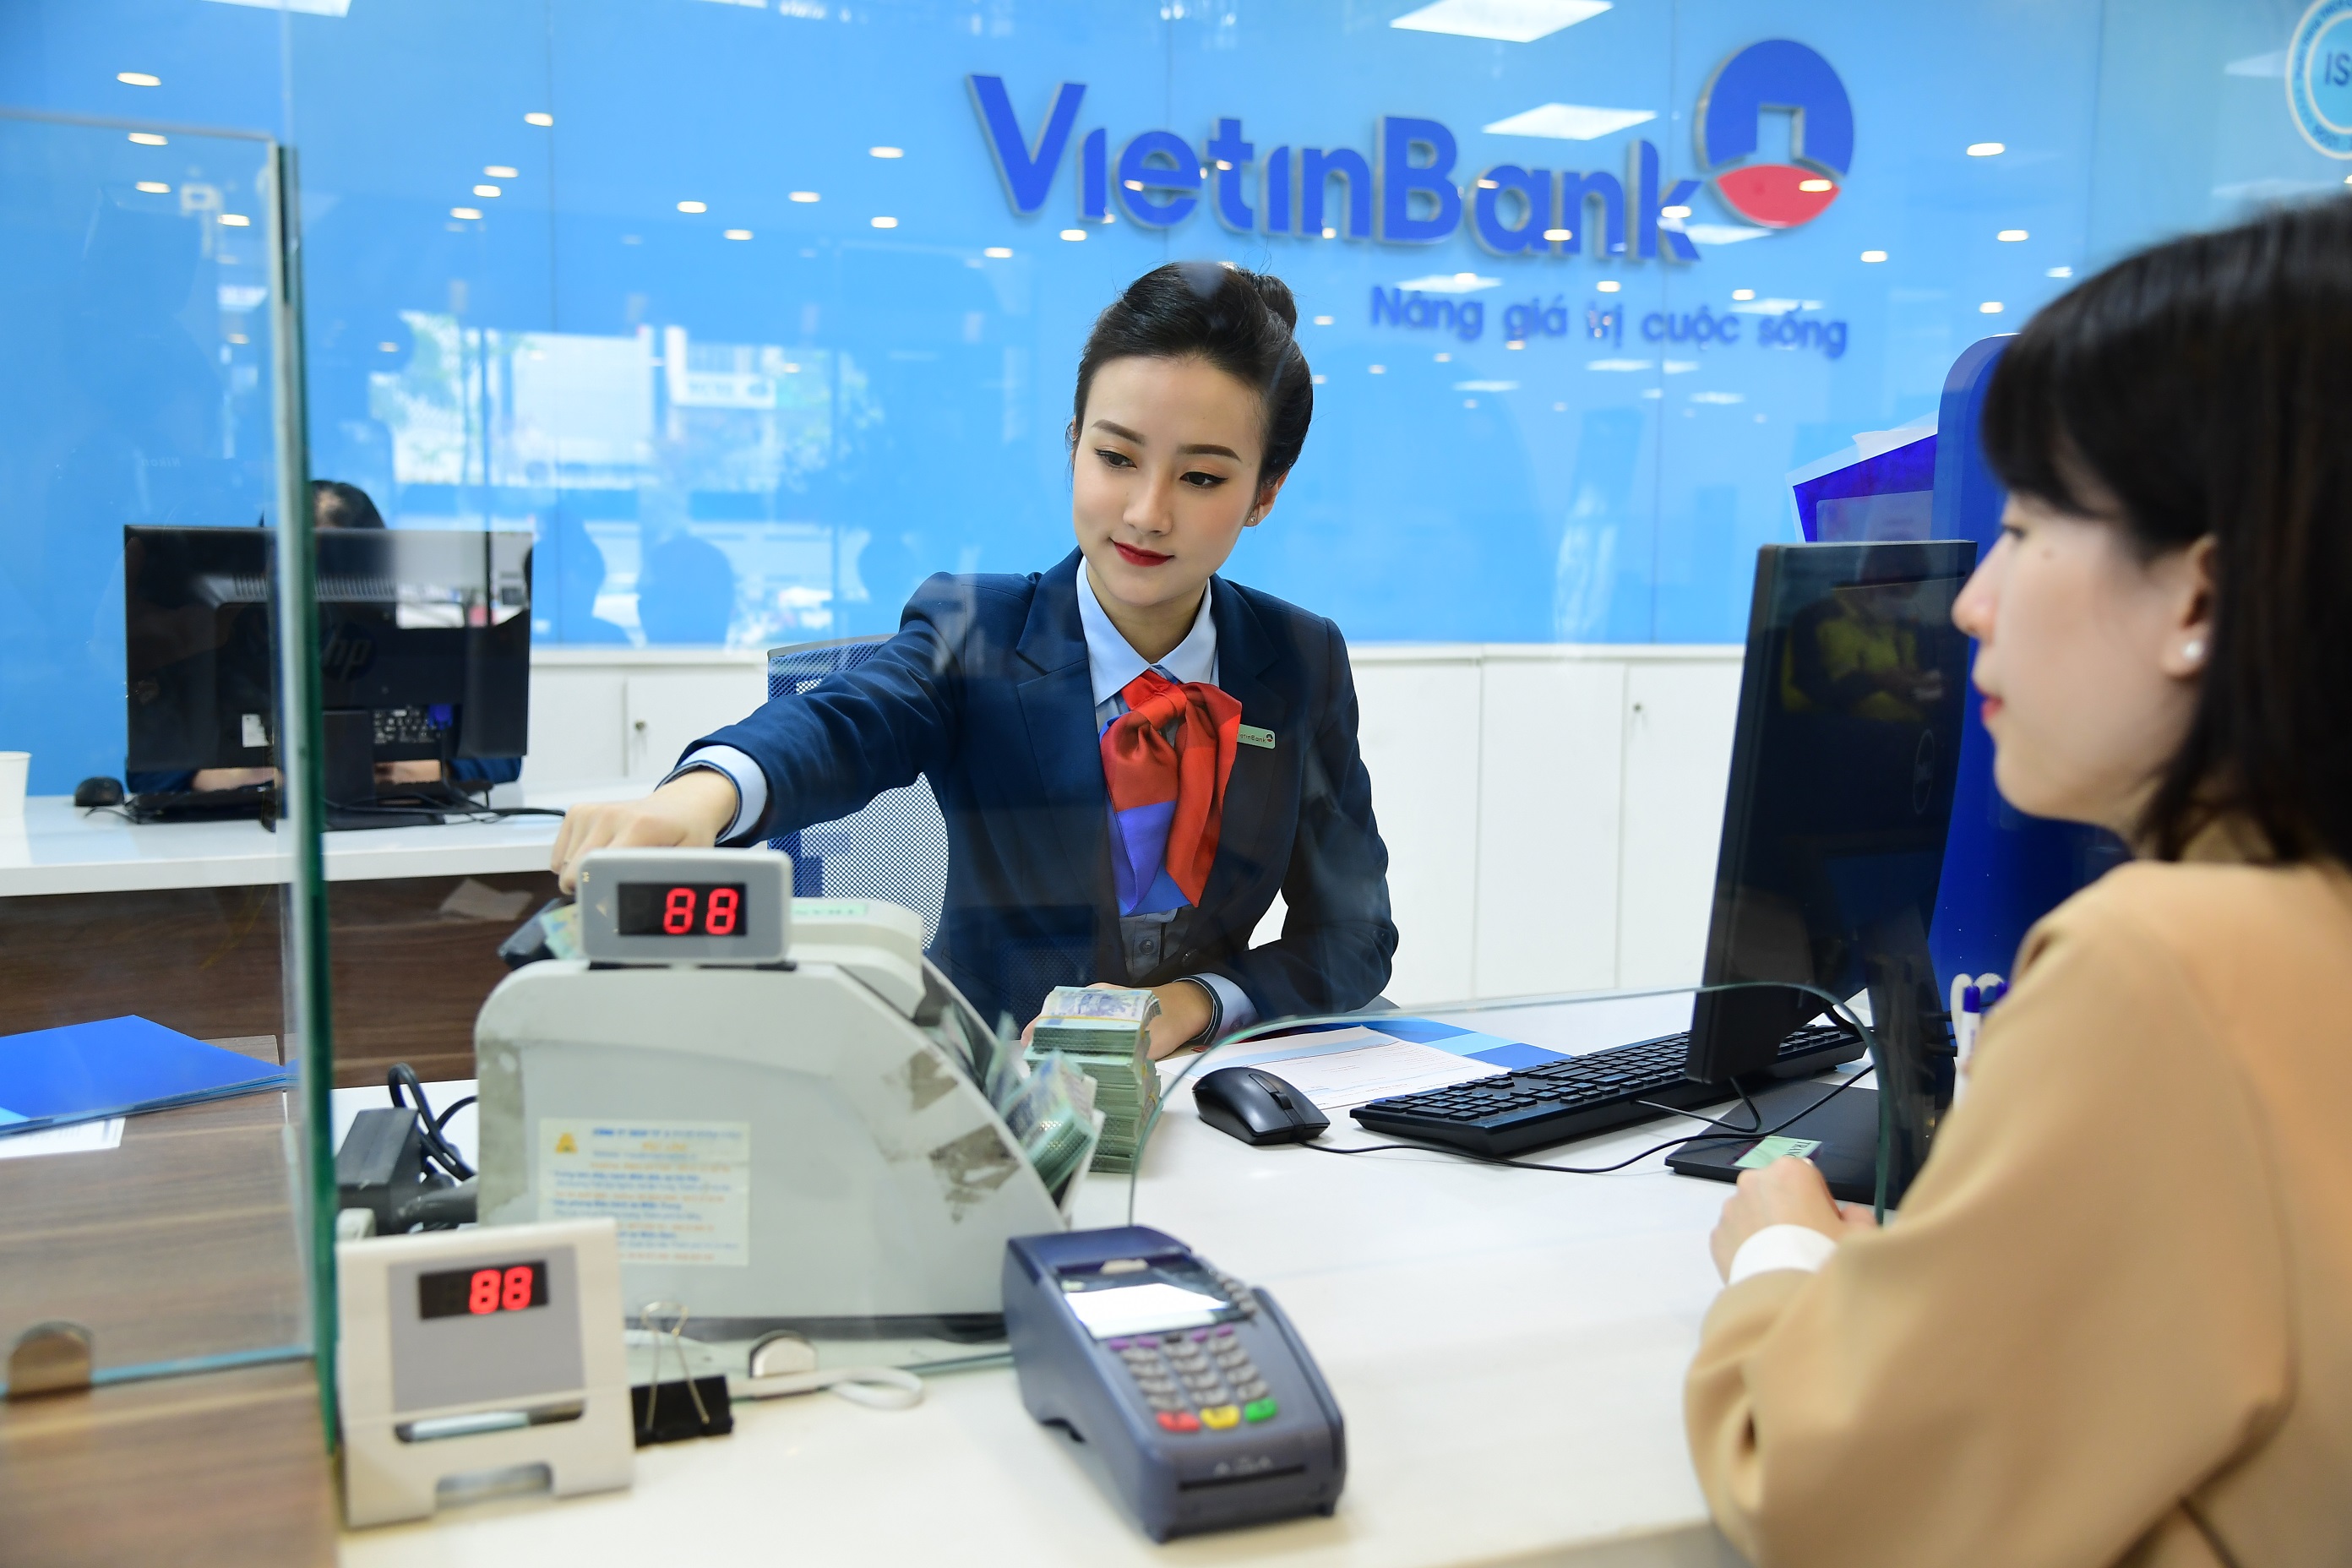 Nhiều tín hiệu tích cực từ việc chia cổ tức của VietinBank | Doanh nghiệp |  Vietnam+ (VietnamPlus)